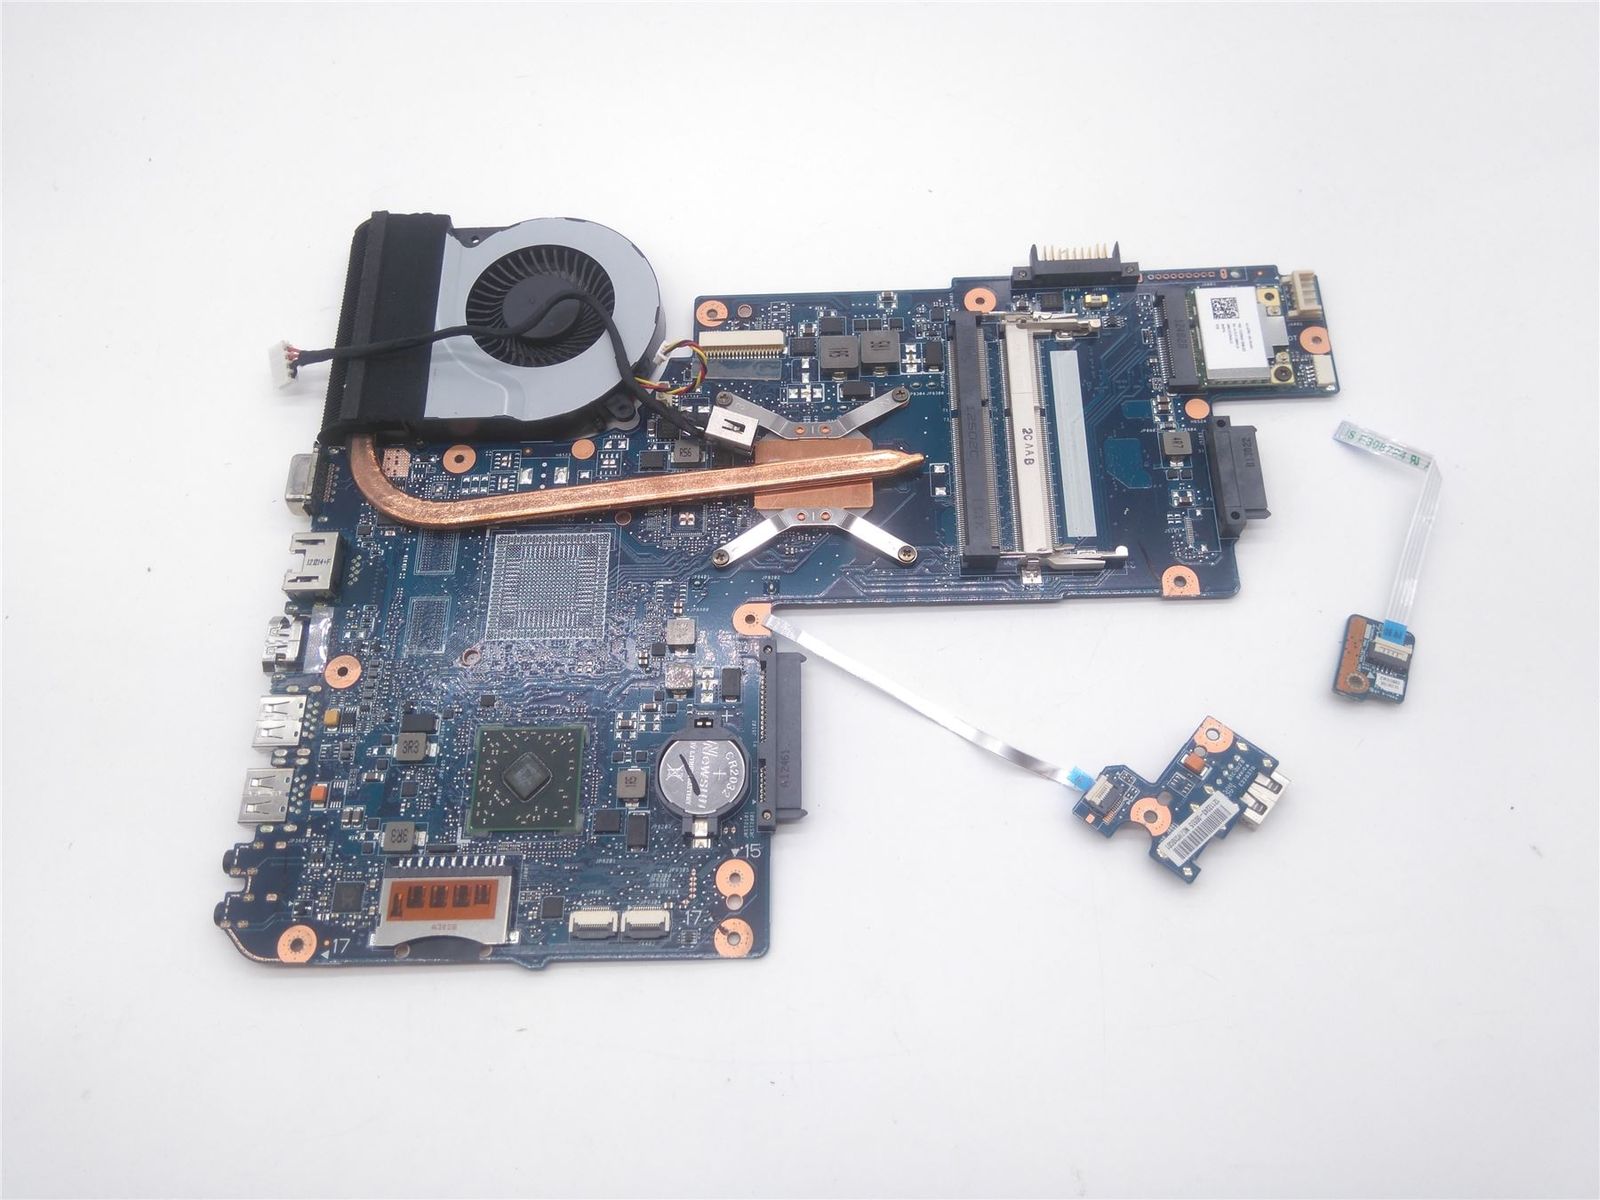 NEW Toshiba C850D AMD Motherboard with Fan/Heatsink